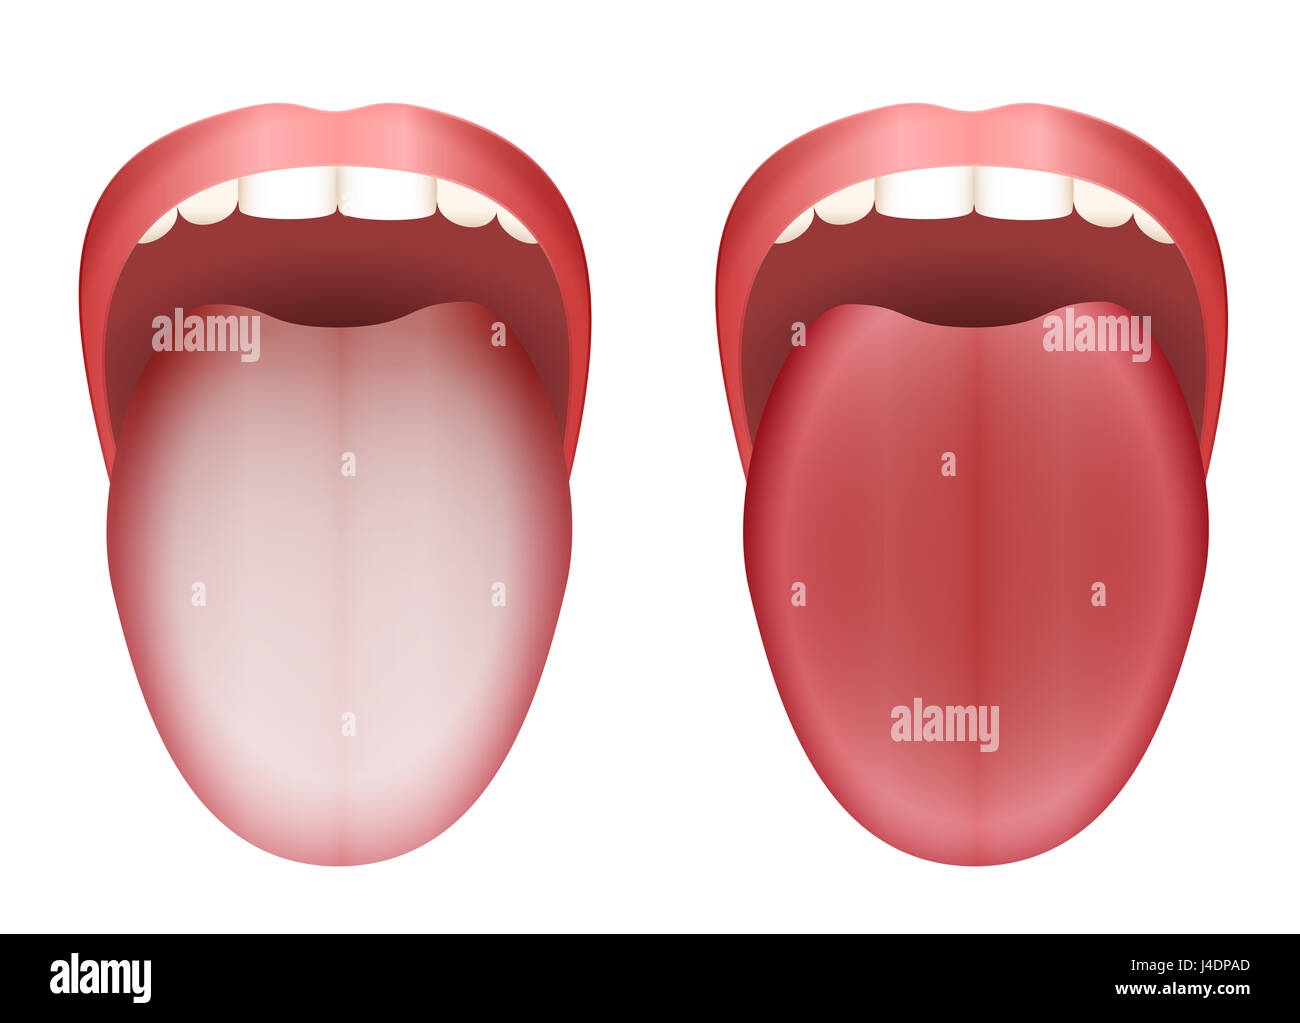 Beschichtete weiße Zunge und saubere, gesunde Zunge durch Vergleich - Abbildung auf weißem Hintergrund. Stockfoto